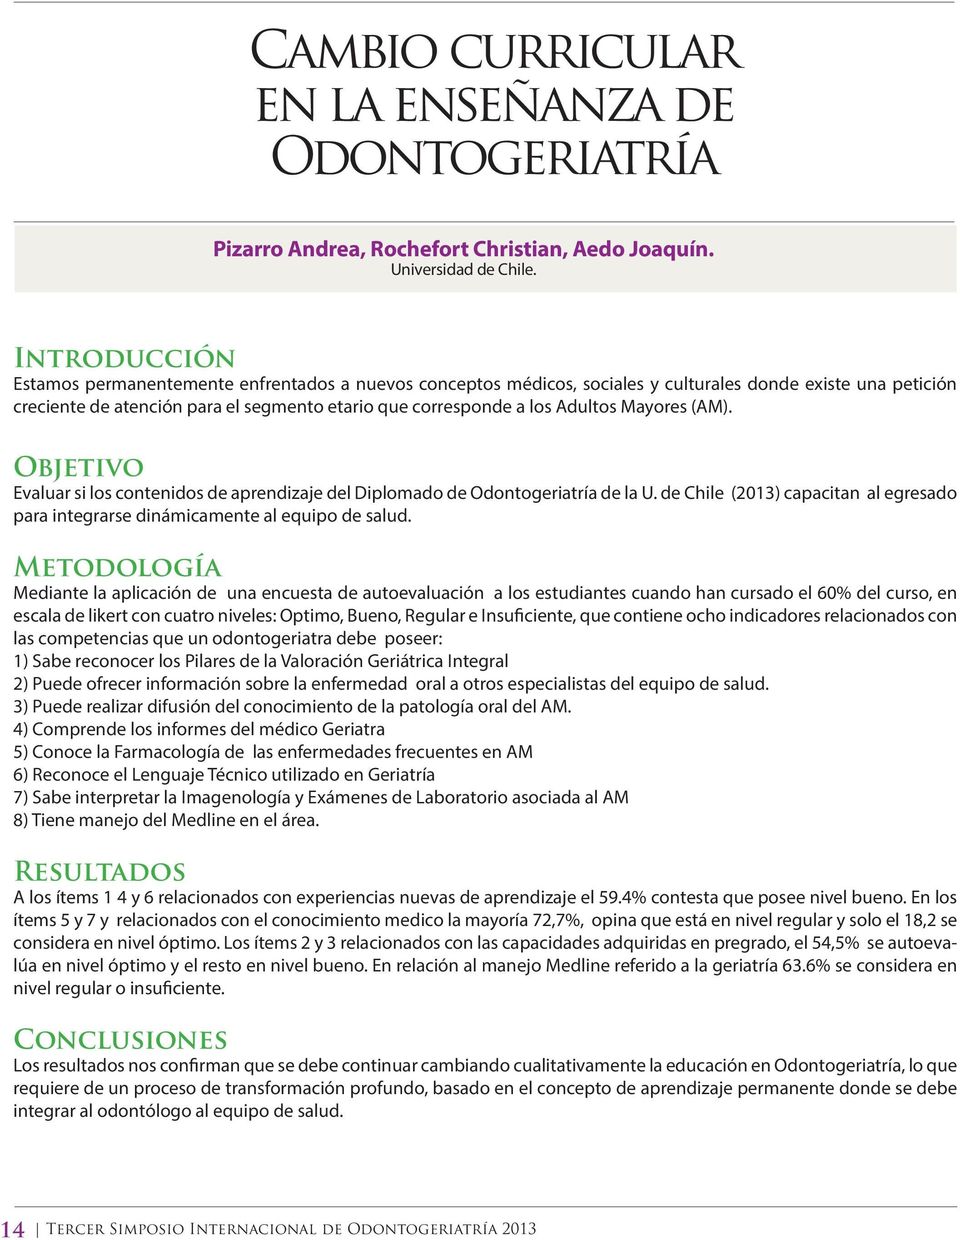 (AM). Evaluar si los contenidos de aprendizaje del Diplomado de Odontogeriatría de la U. de Chile (2013) capacitan al egresado para integrarse dinámicamente al equipo de salud.